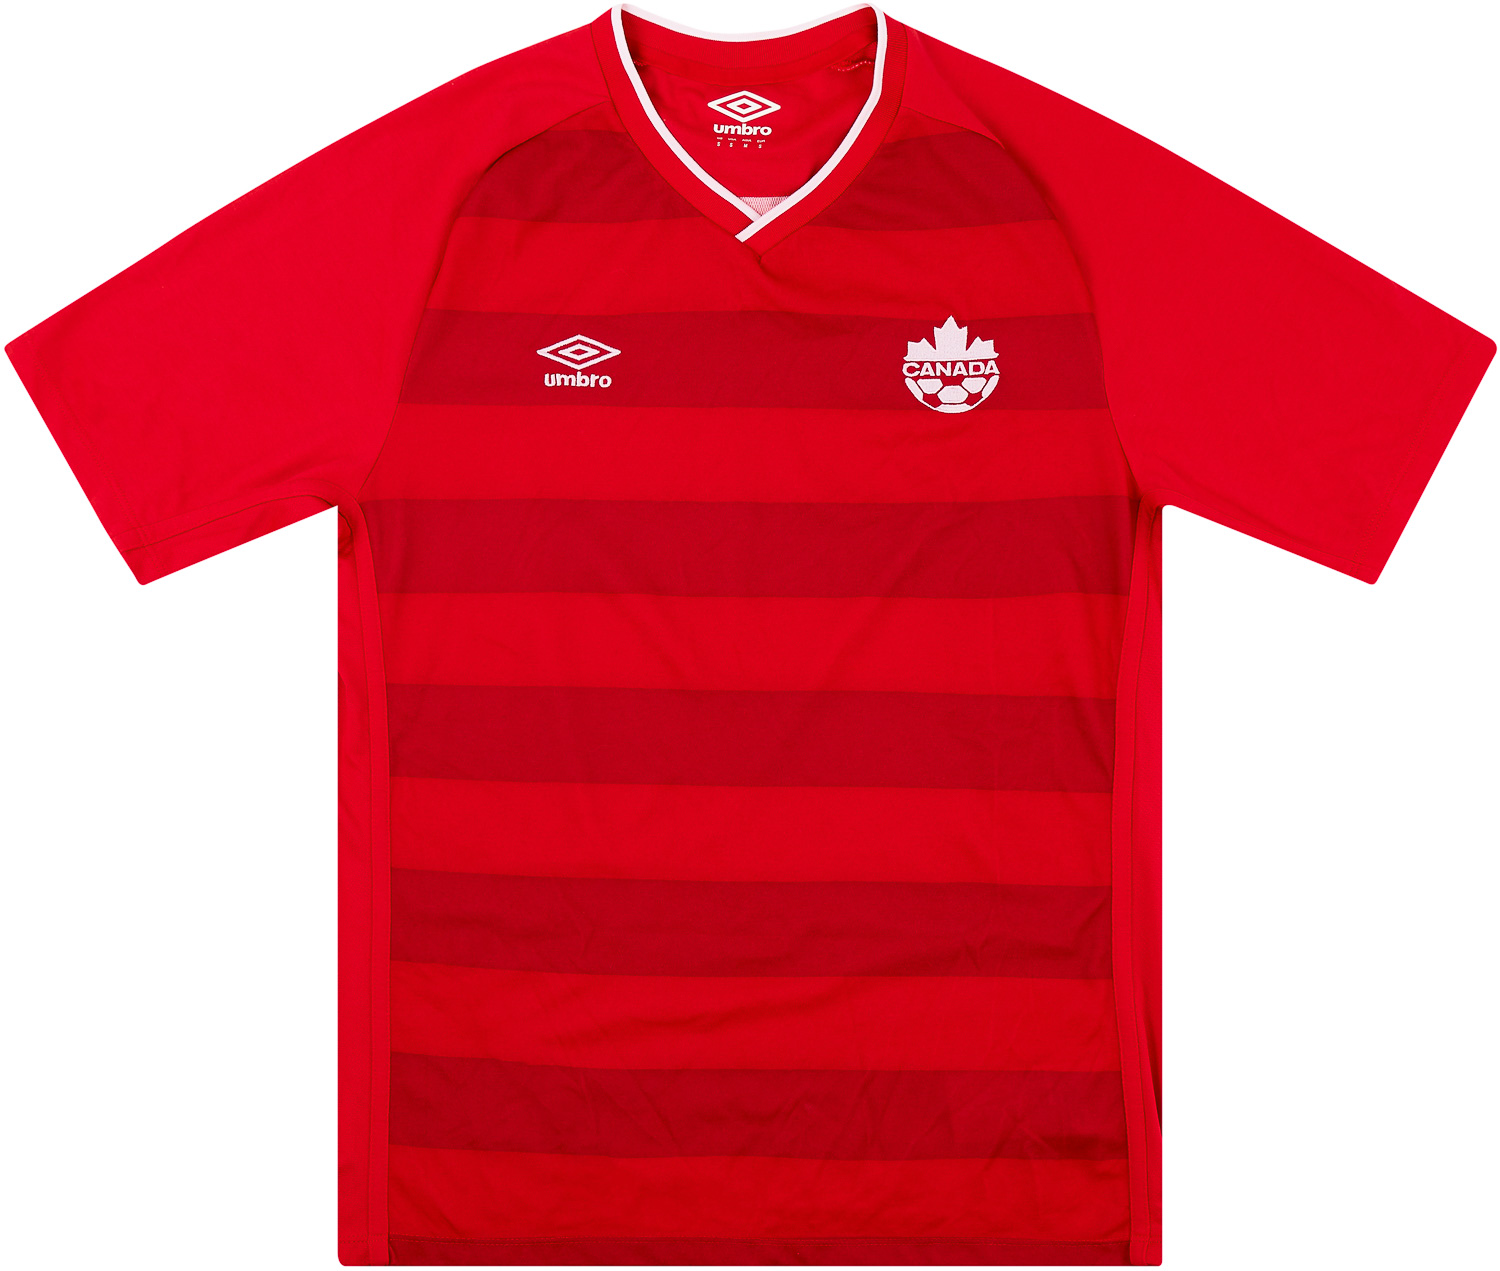 Retro Canada Shirt